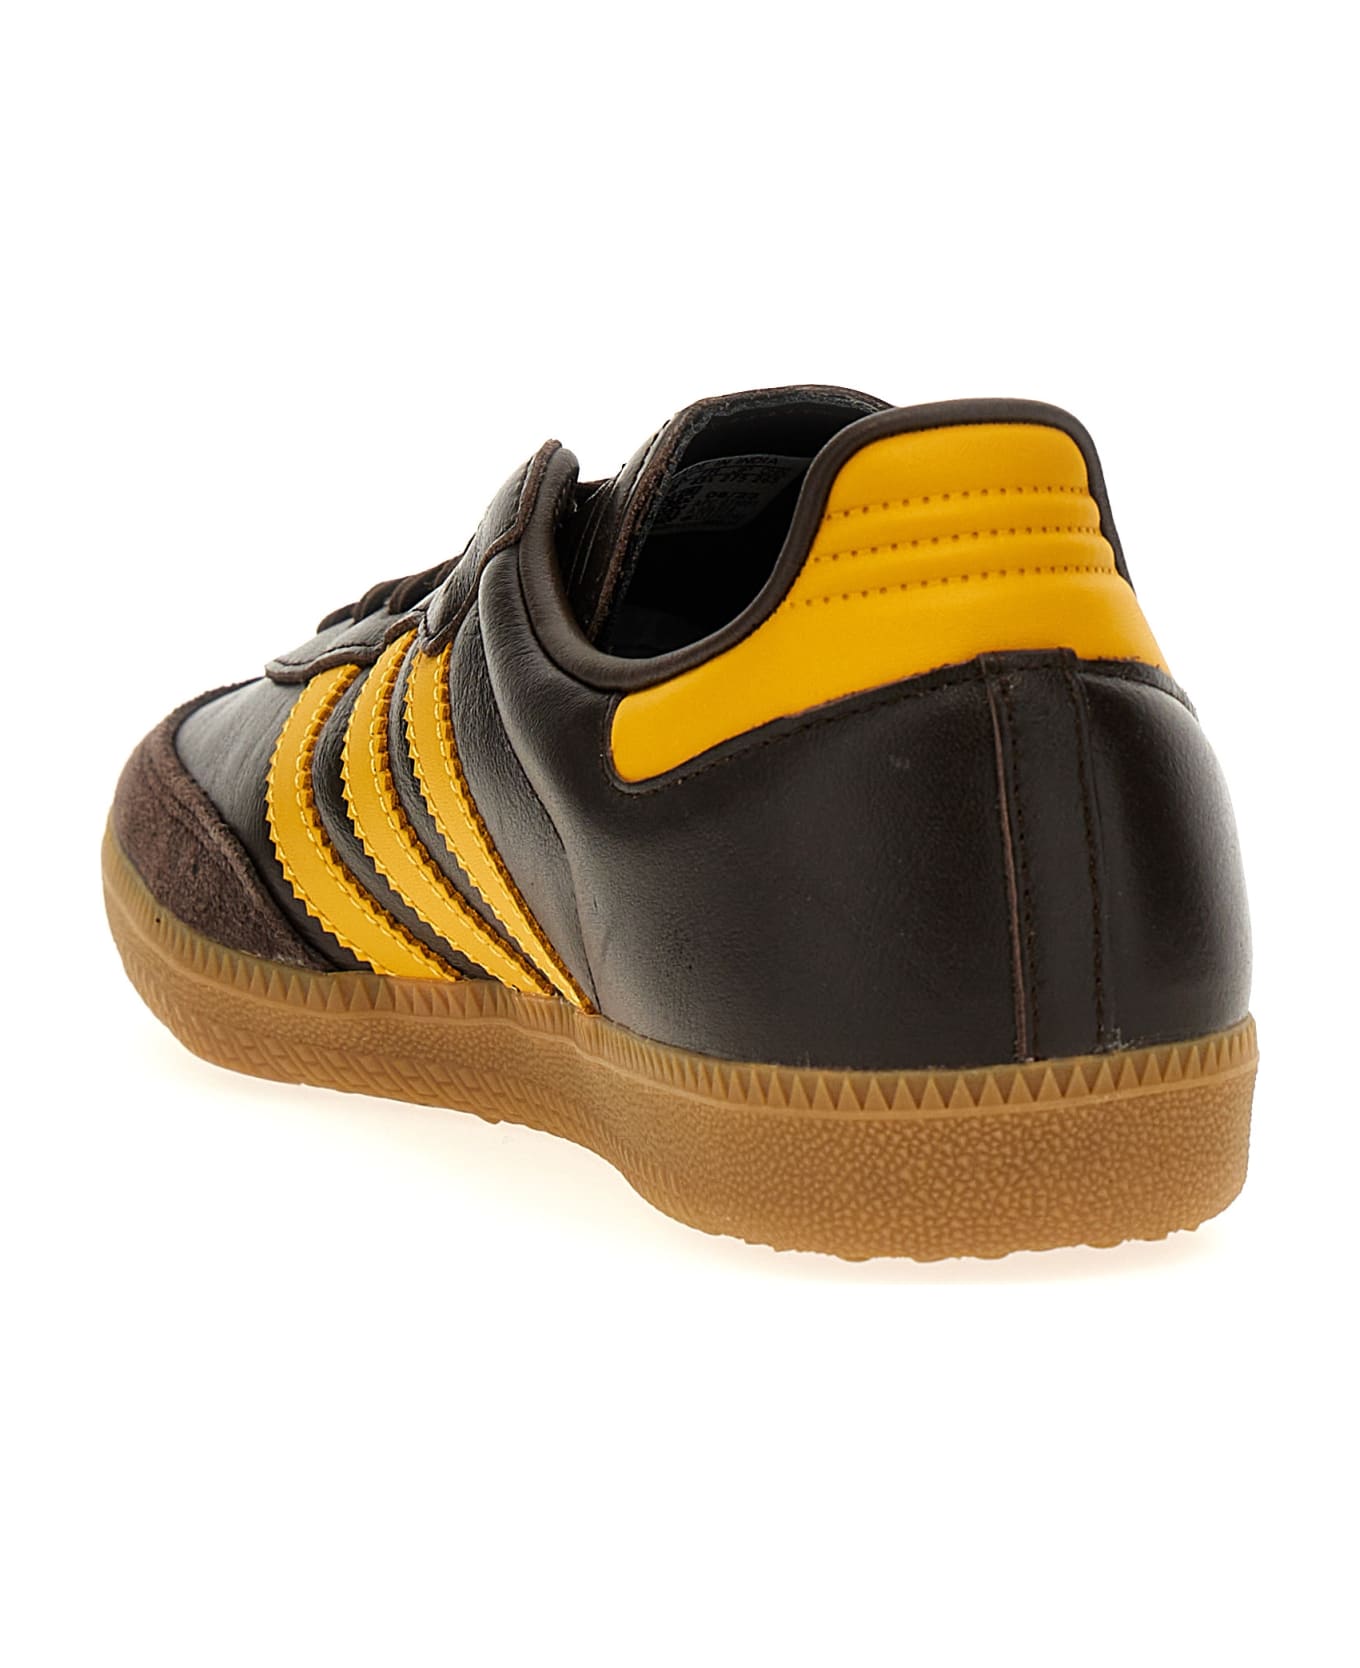 Adidas Originals Samba Og Sneakers - Brown